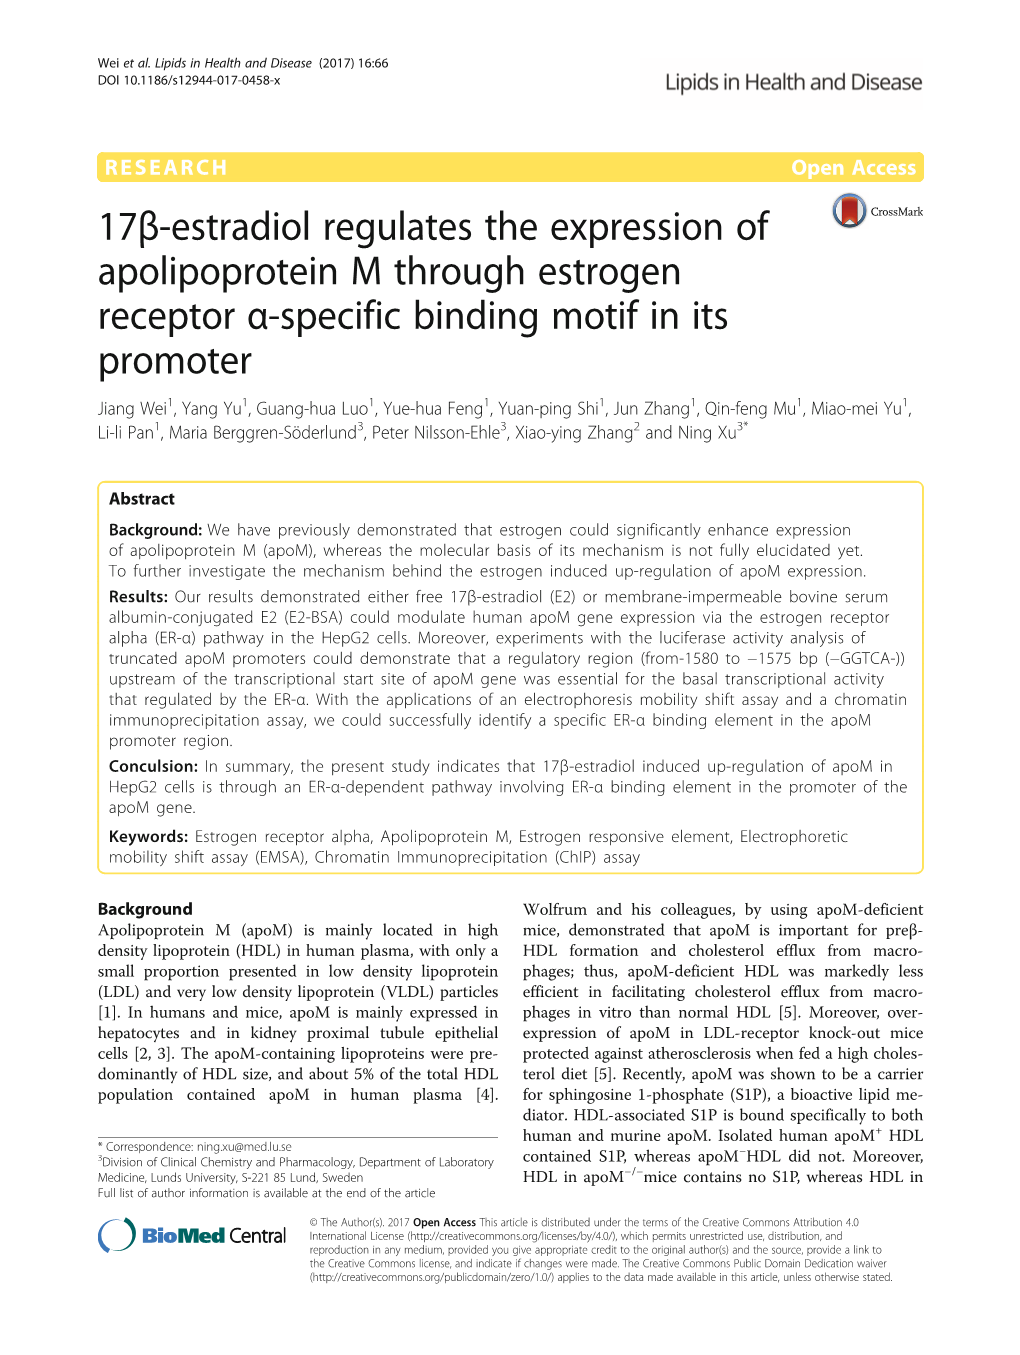 17Β-Estradiol Regulates the Expression of Apolipoprotein M Through